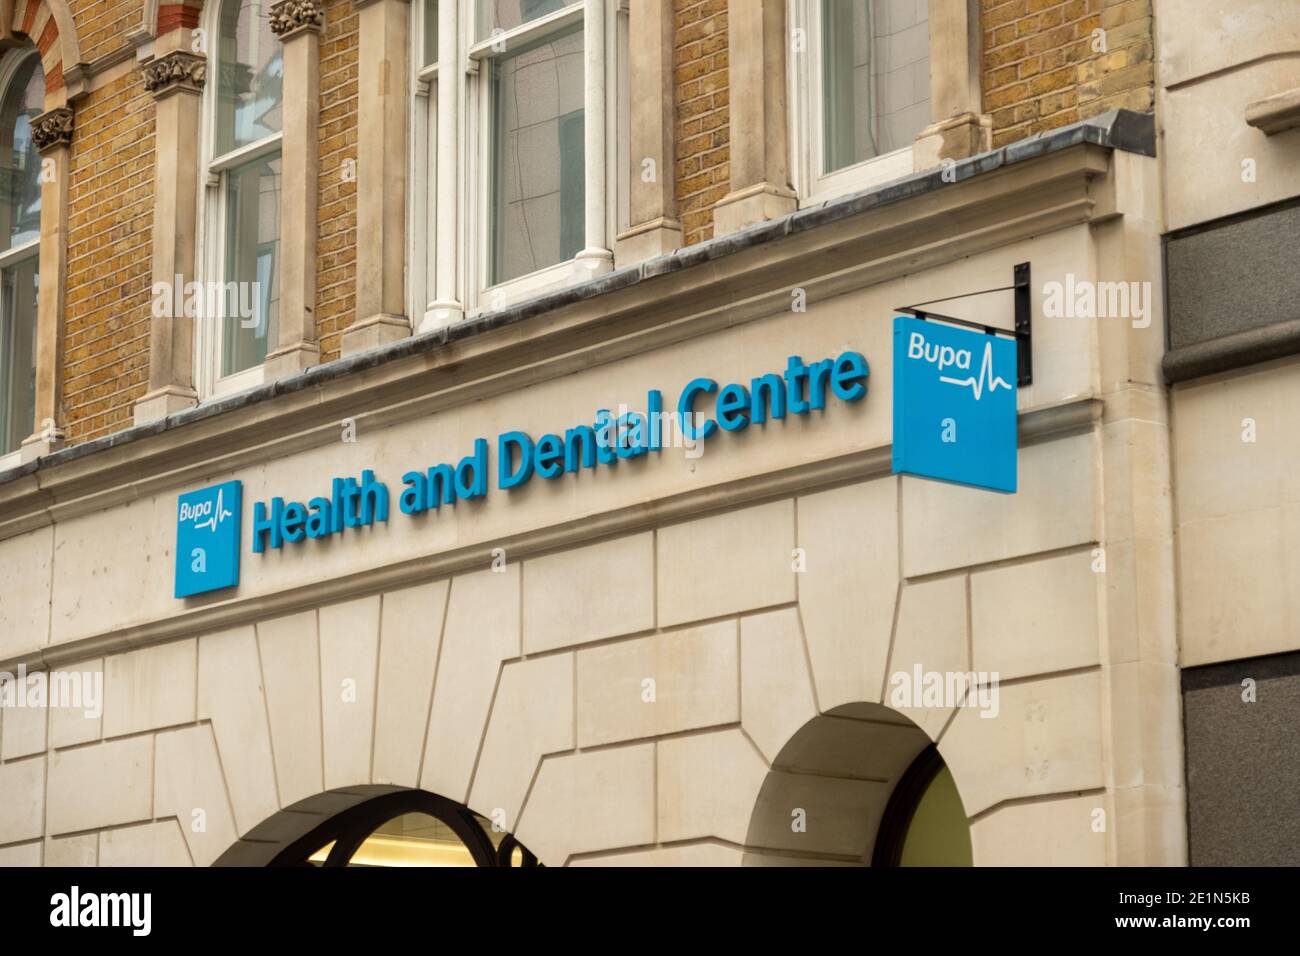 Londra - Gennaio 2020: BUPA Dental Care Branch - un gruppo internazionale di assicurazioni e assistenza sanitaria Foto Stock